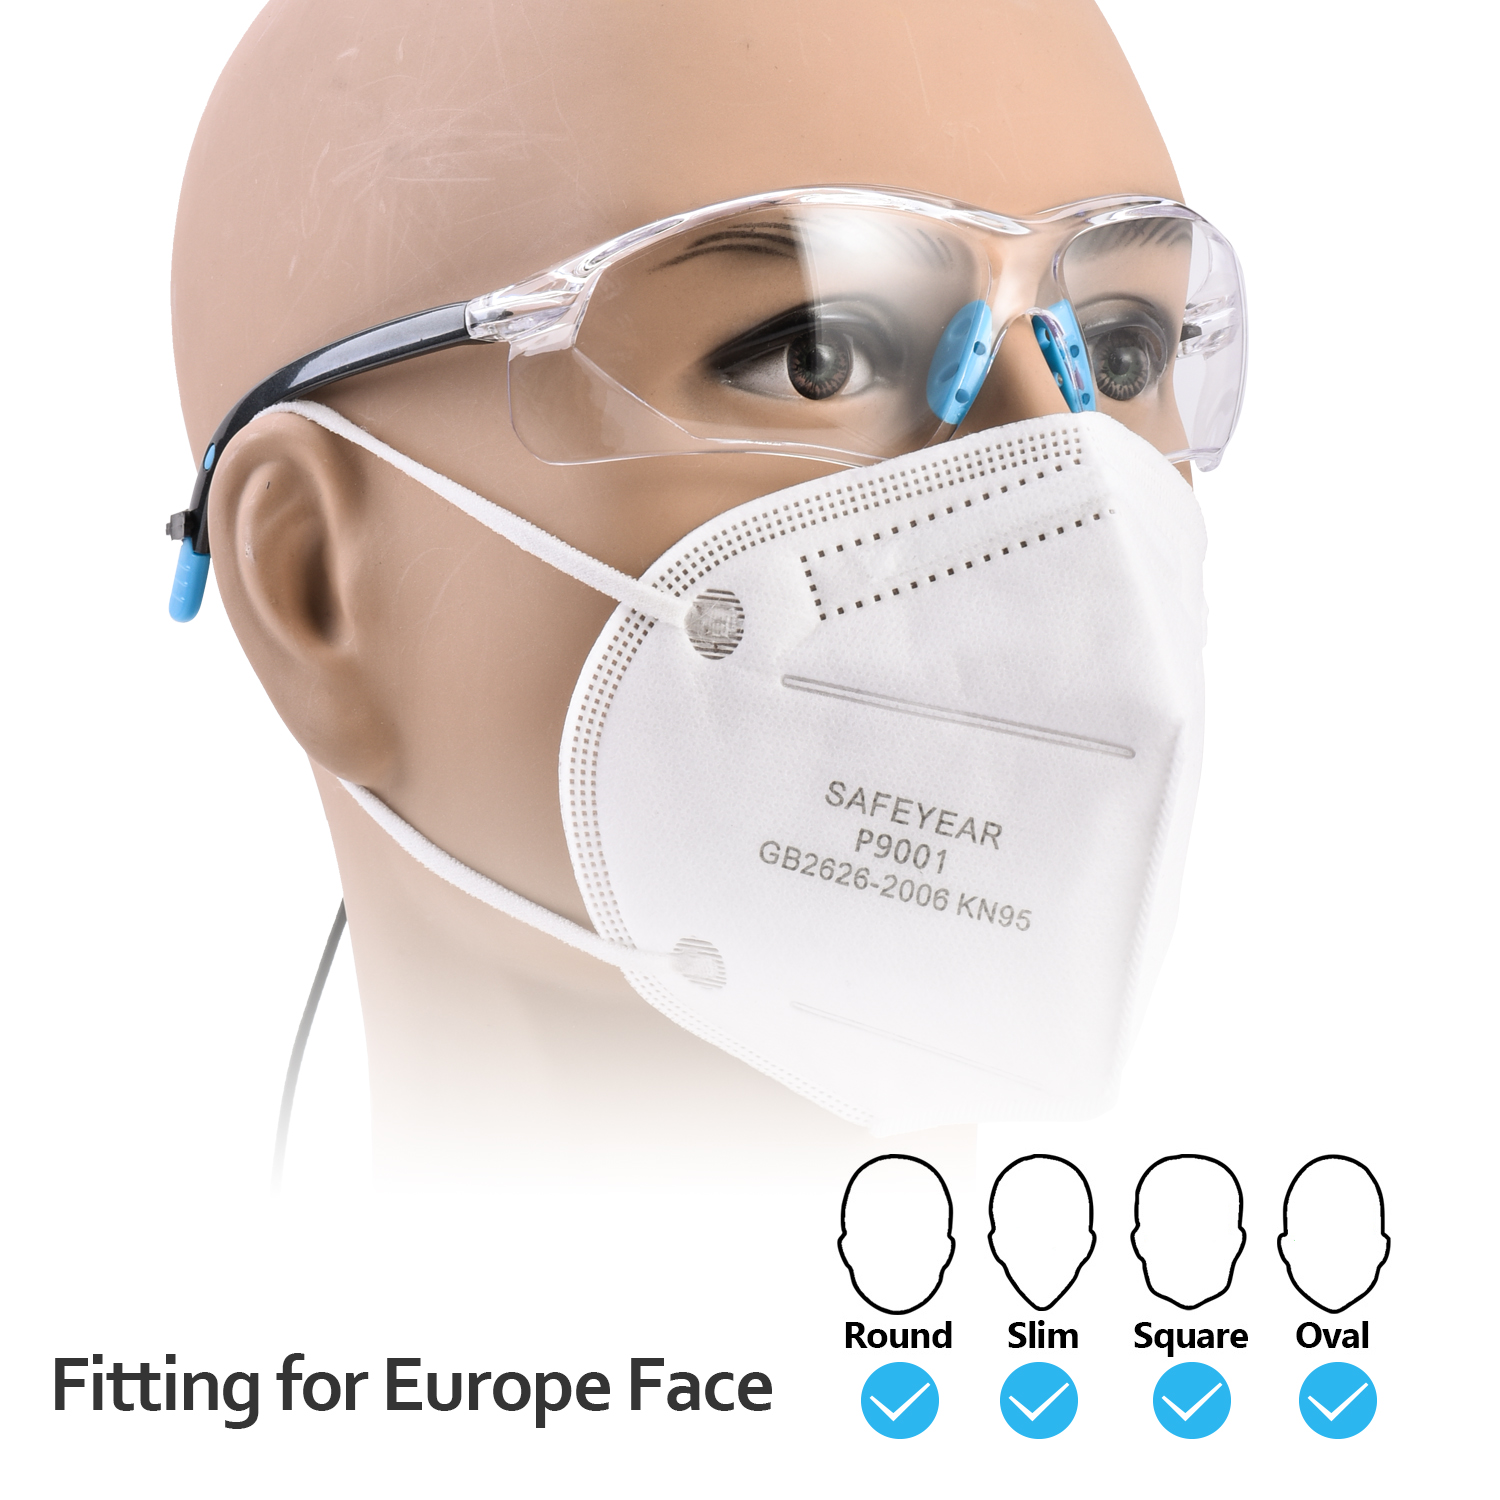 Occhiali di sicurezza omologati CE SG003 blu